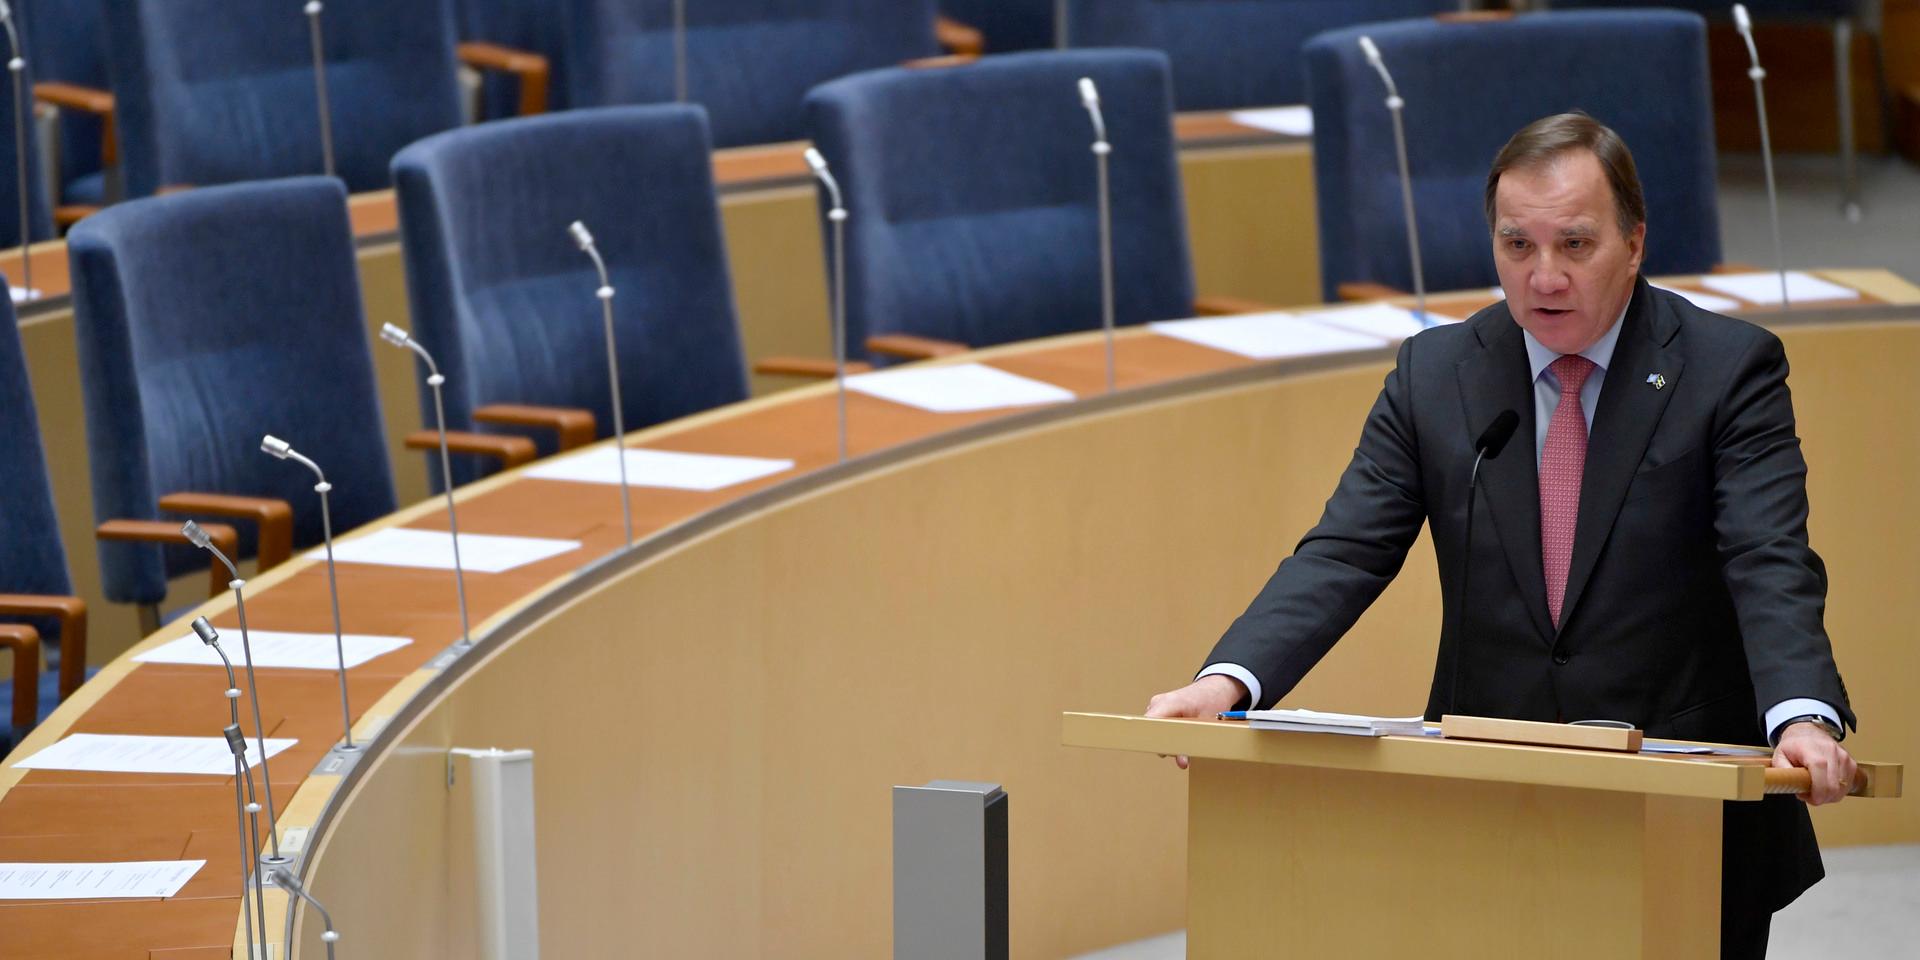 Statsminister Stefan Löfven (S) i riksdagen för återrapportering från Europeiska rådets möte.